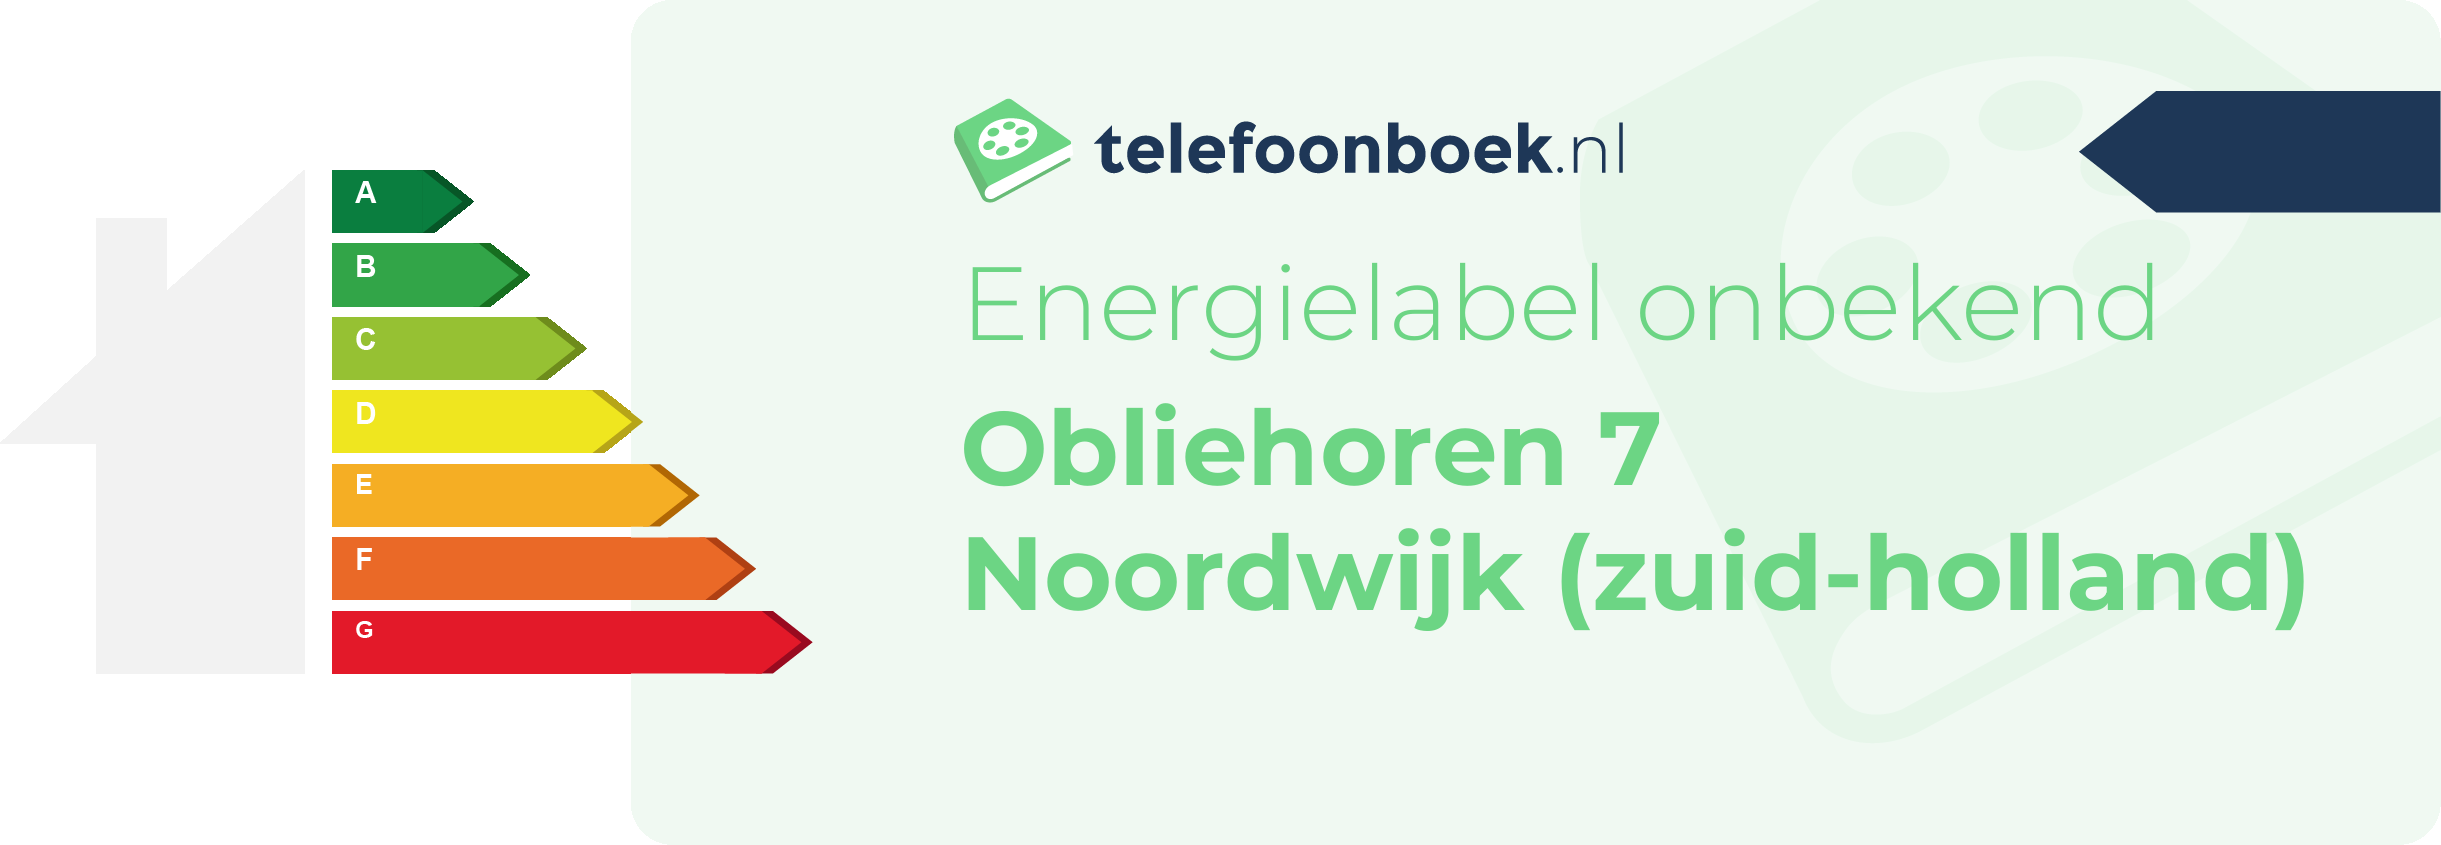 Energielabel Obliehoren 7 Noordwijk (Zuid-Holland)